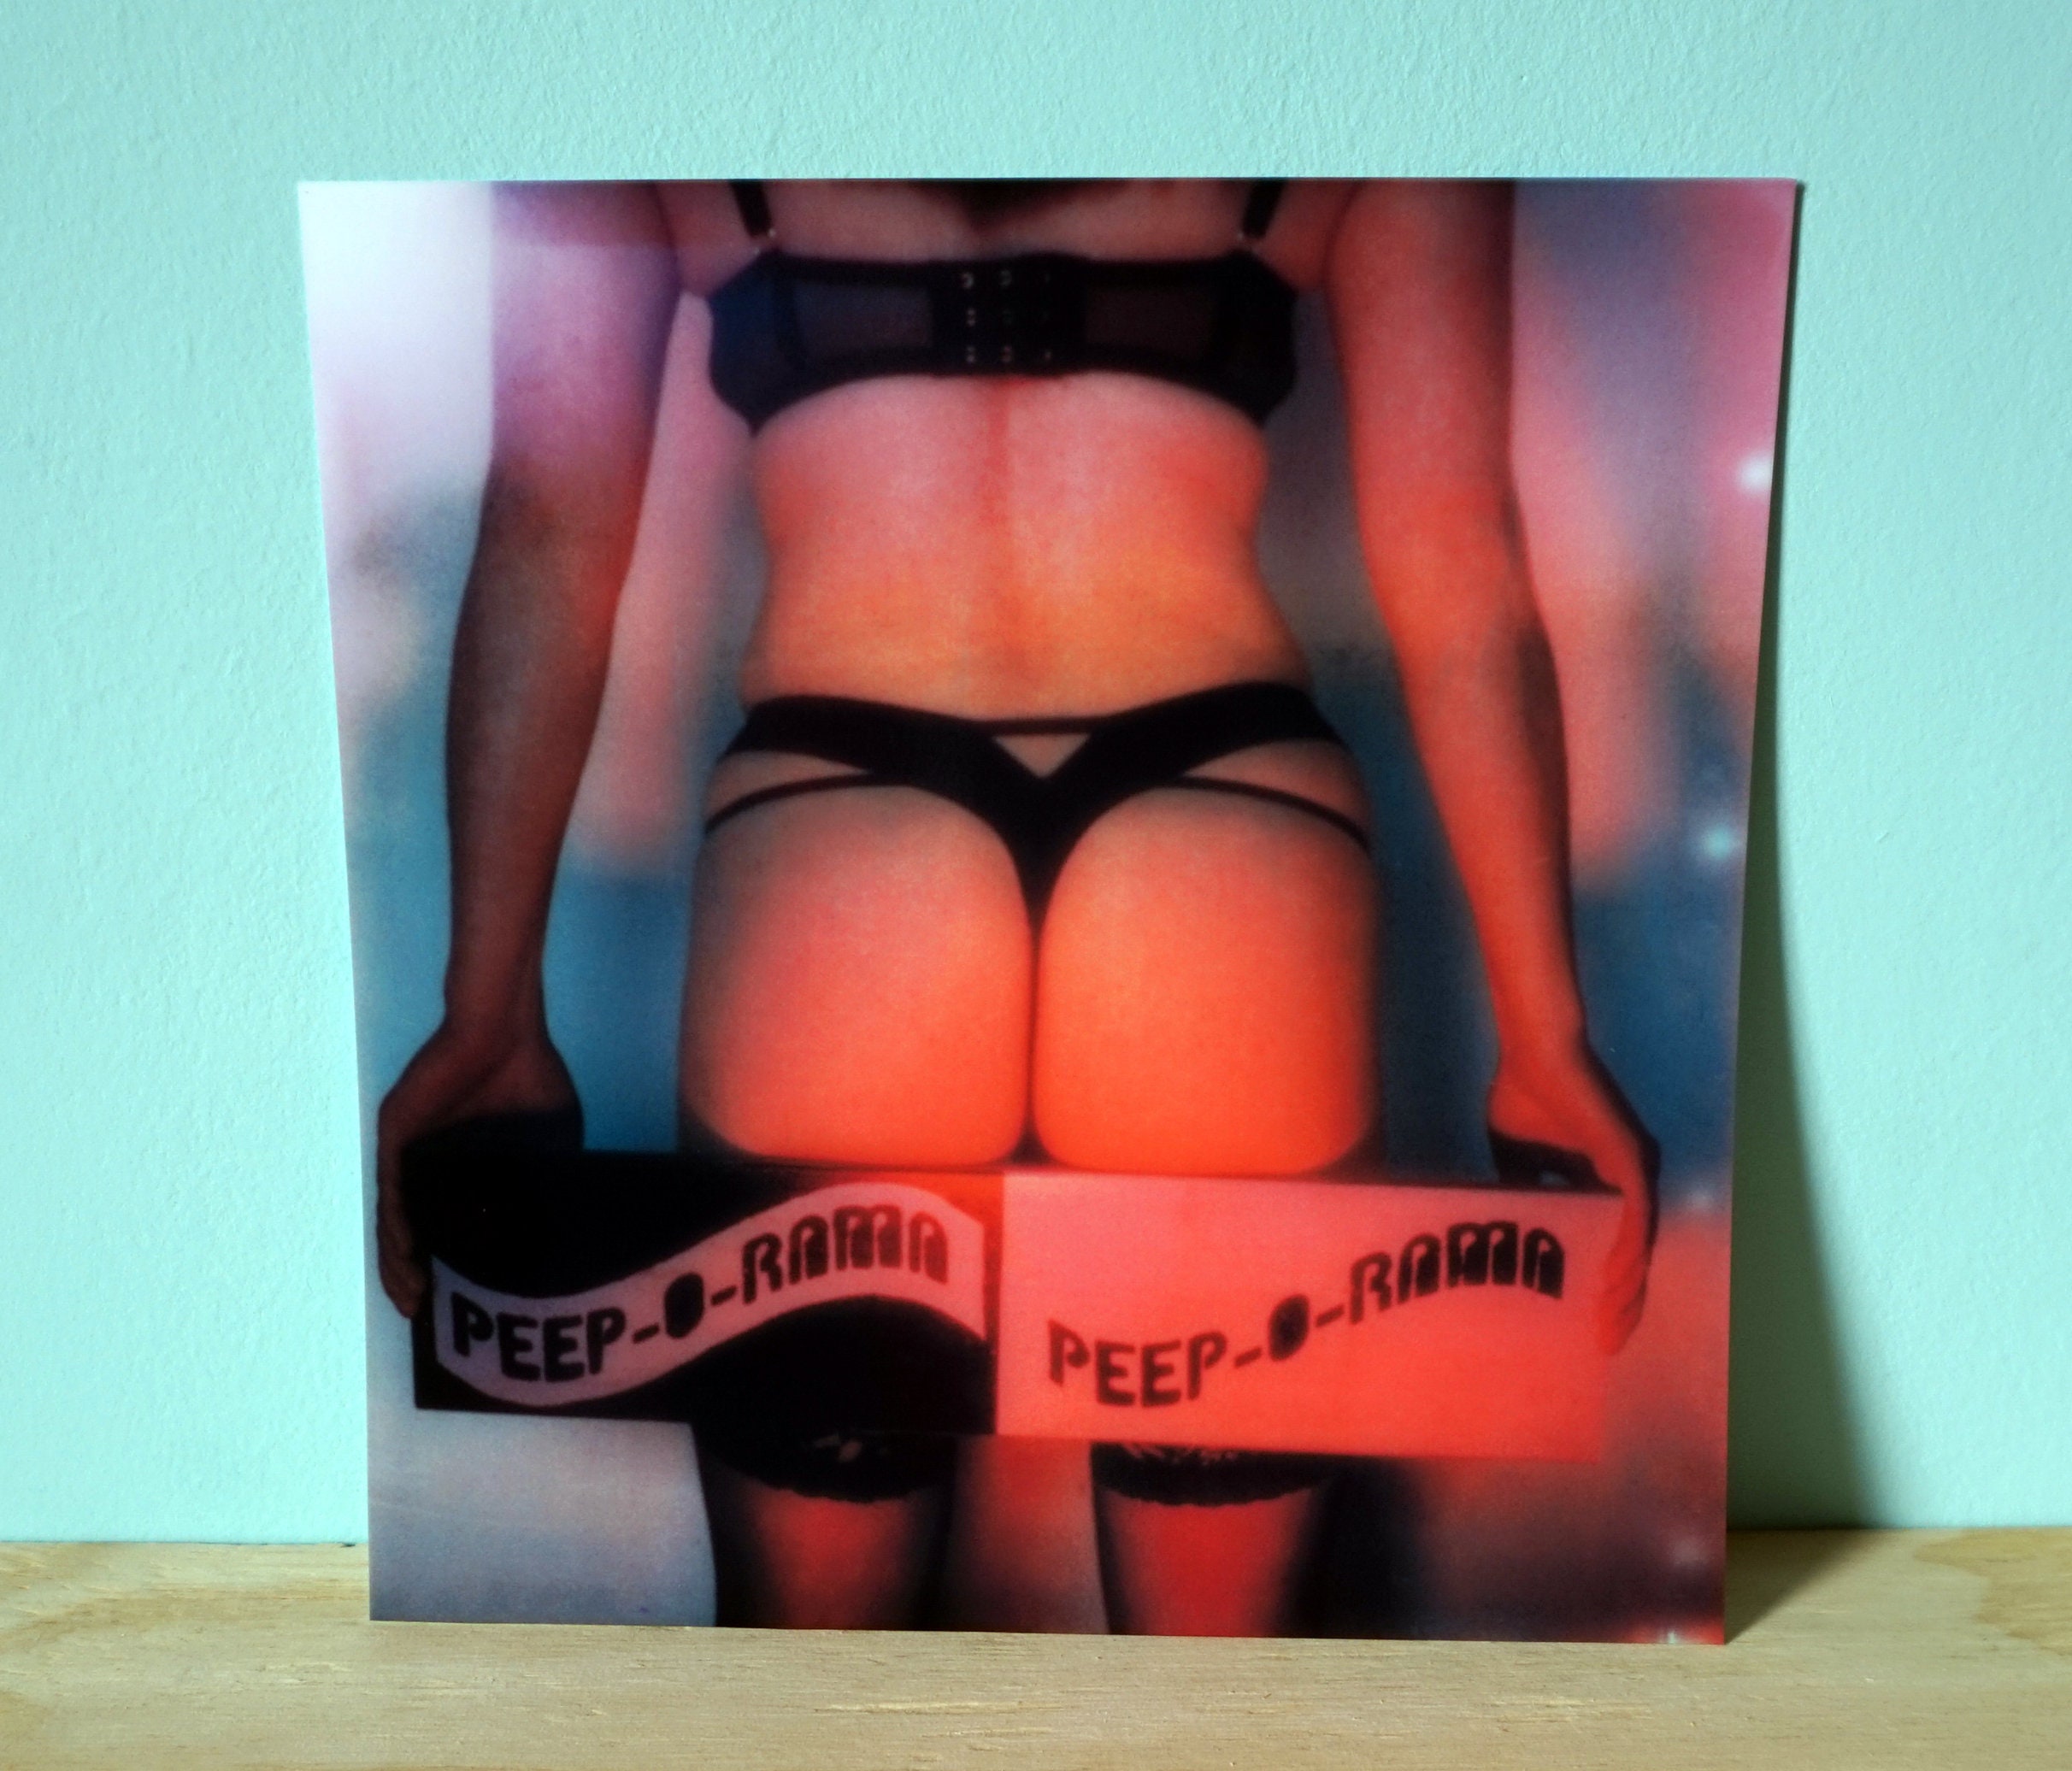 PEEP SHOW Photo Art Print / Poster / Lowbrow Polaroid pic